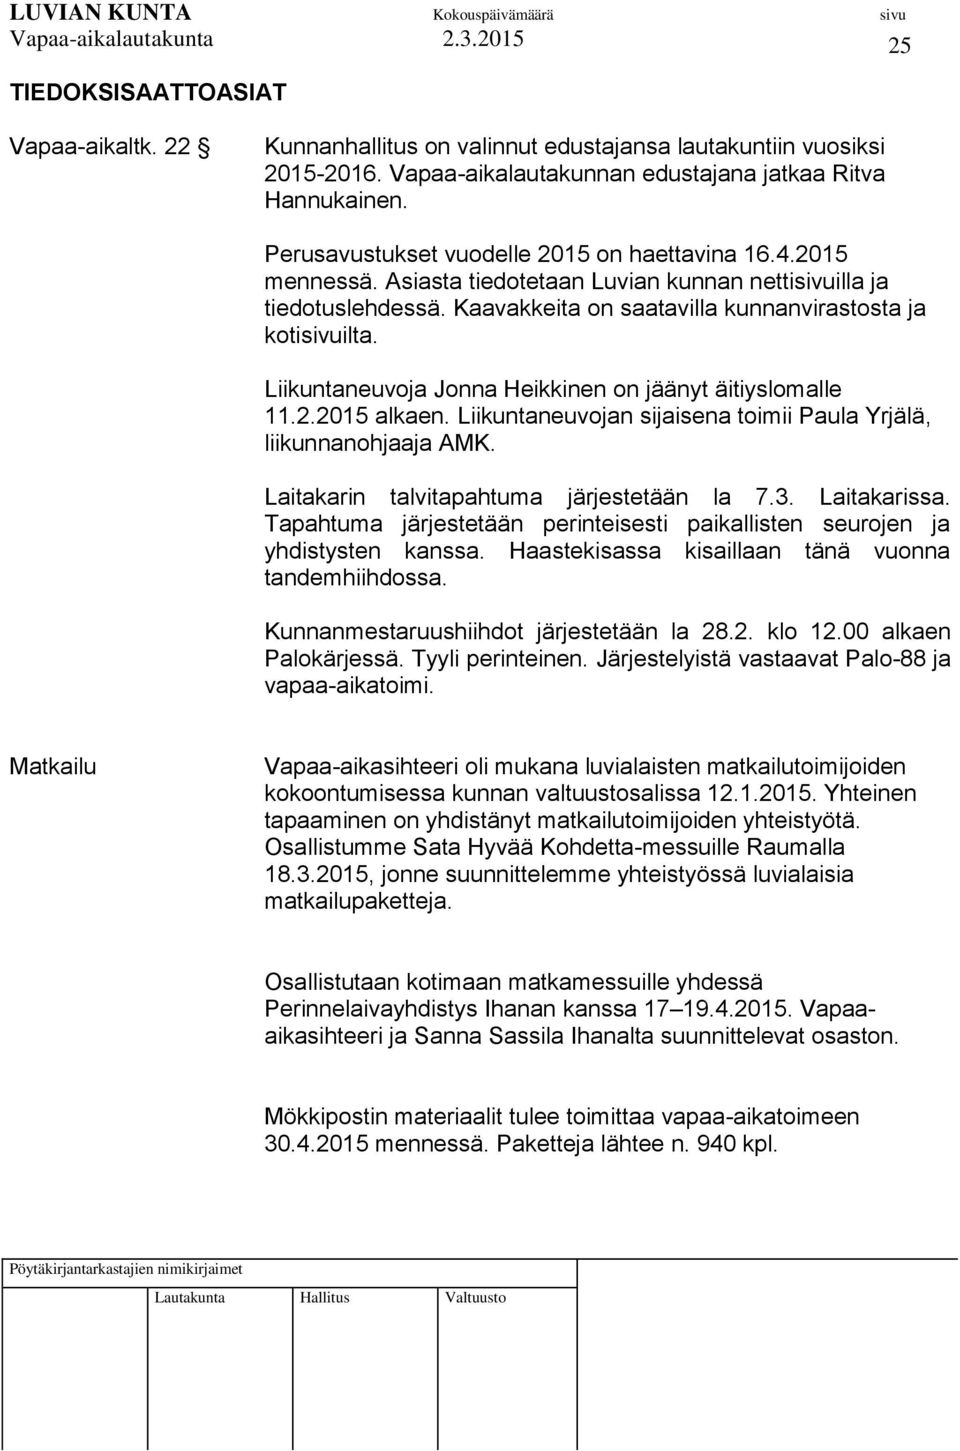 Liikuntaneuvoja Jonna Heikkinen on jäänyt äitiyslomalle 11.2.2015 alkaen. Liikuntaneuvojan sijaisena toimii Paula Yrjälä, liikunnanohjaaja AMK. Laitakarin talvitapahtuma järjestetään la 7.3.